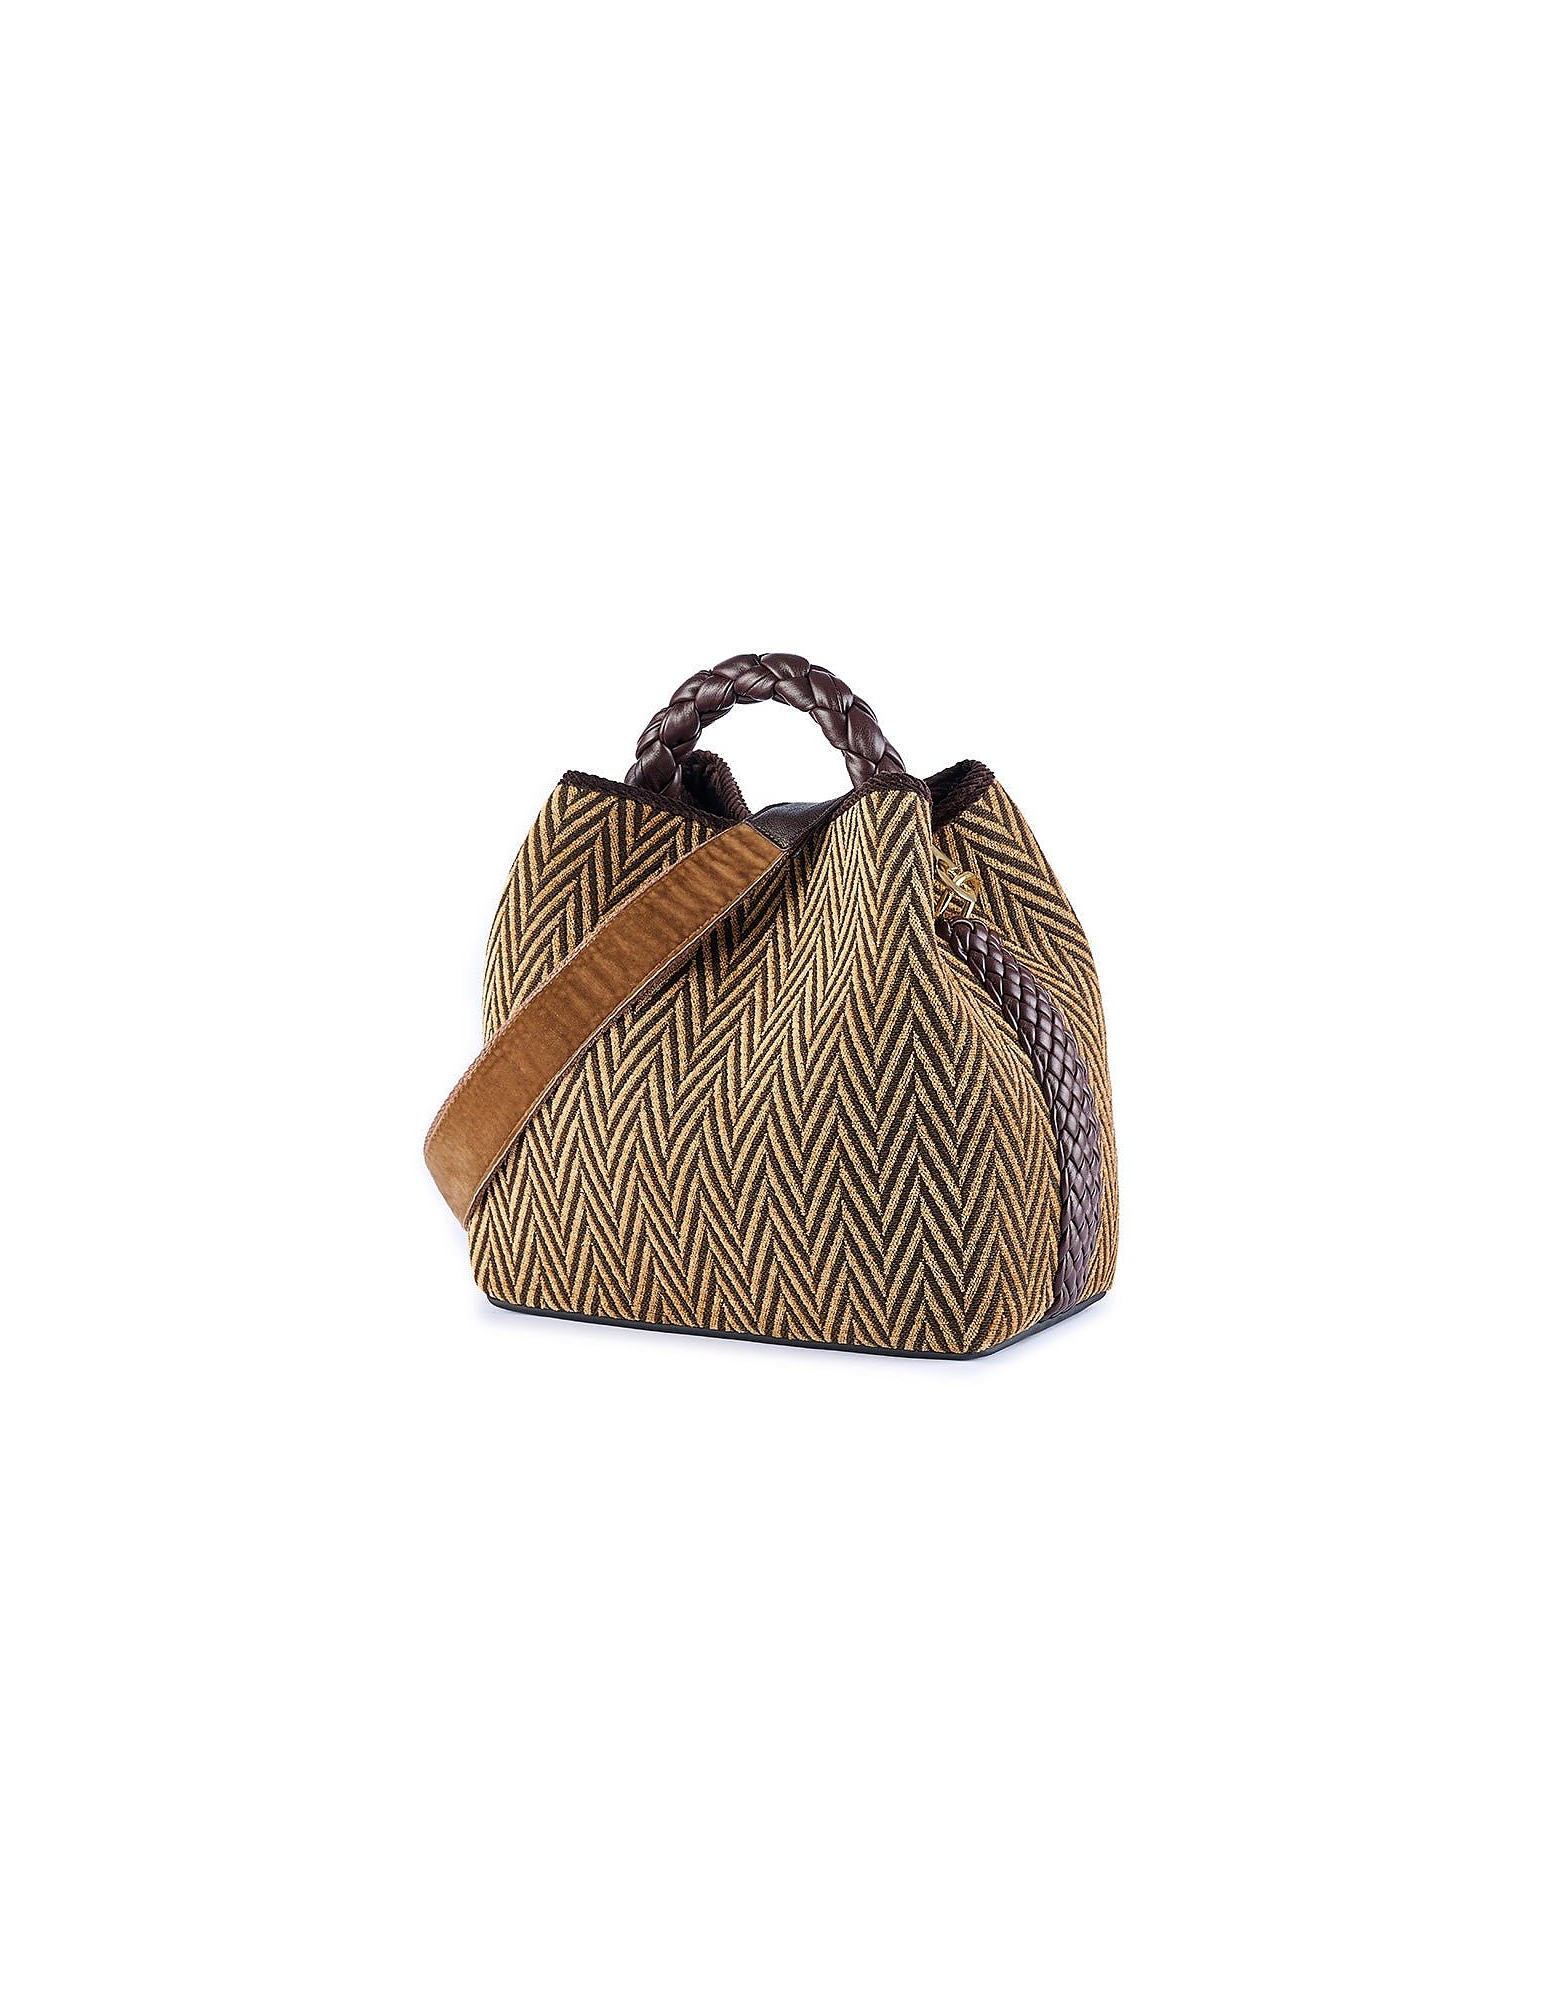 Viamailbag Designer Handbags Coral Sac - Light Brown Bucket Bag In Marron